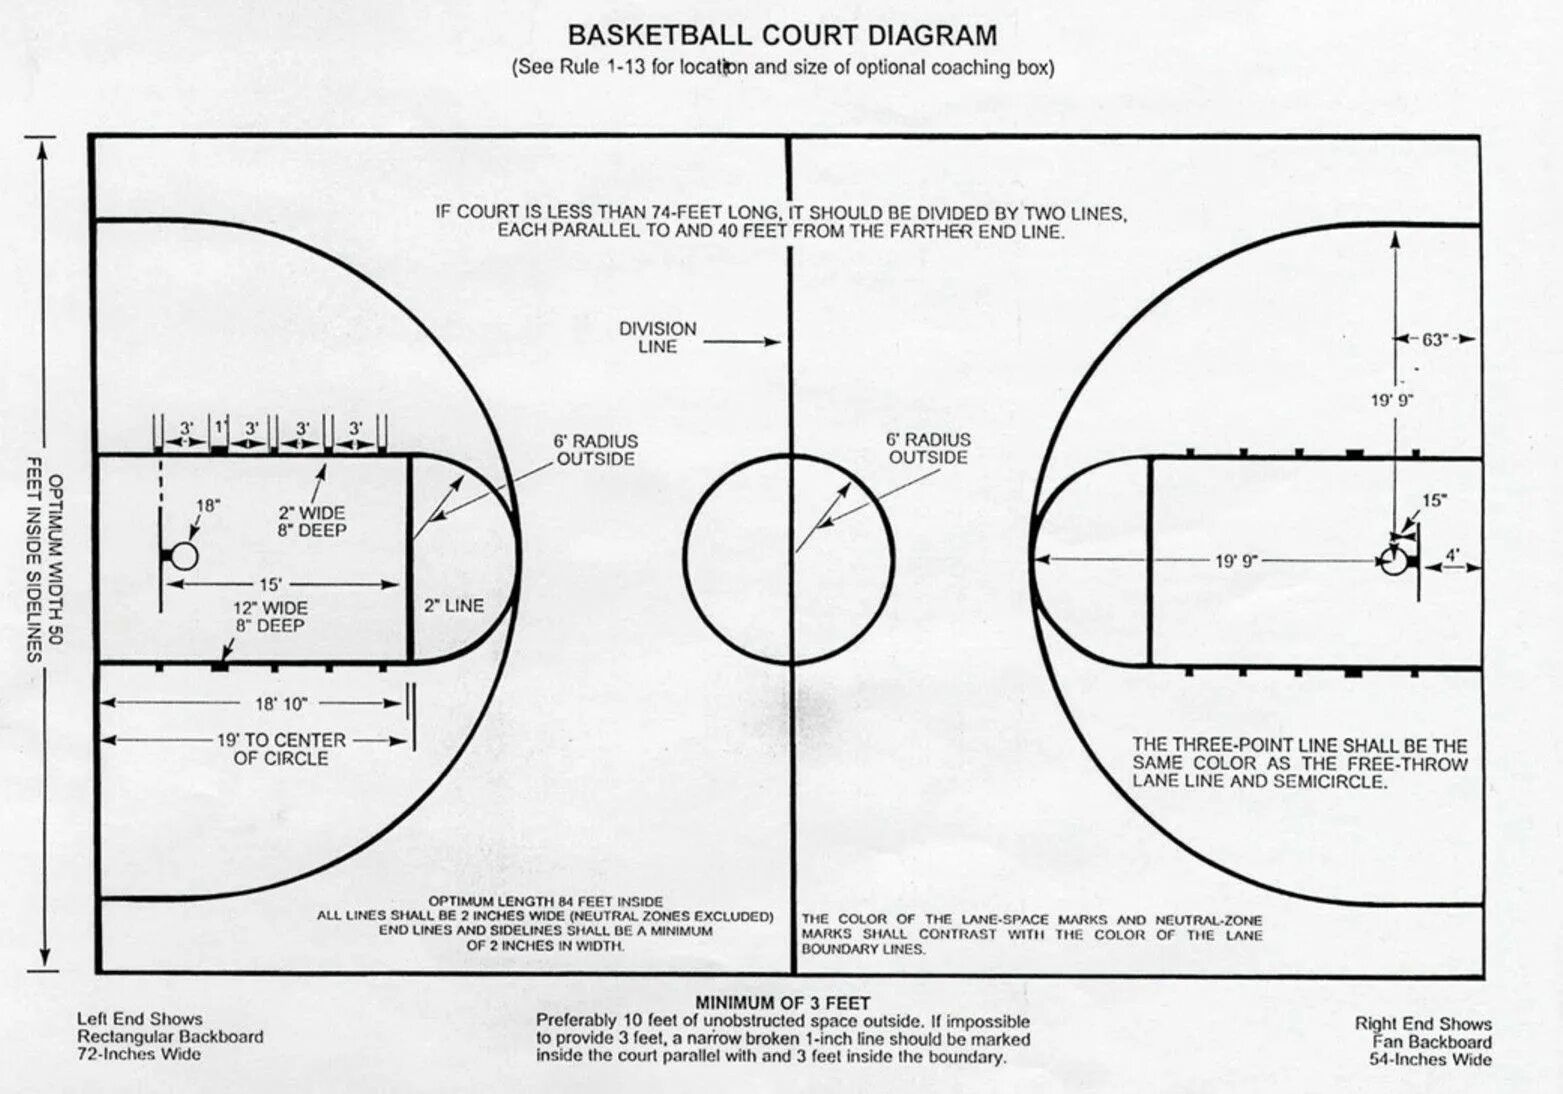 Сколько зон в баскетболе. 3 Очковая линия в баскетболе. 3 Очковая зона в баскетболе. Линия 3х очкового броска в баскетболе. Разметка трехсекундной зоны в баскетболе.